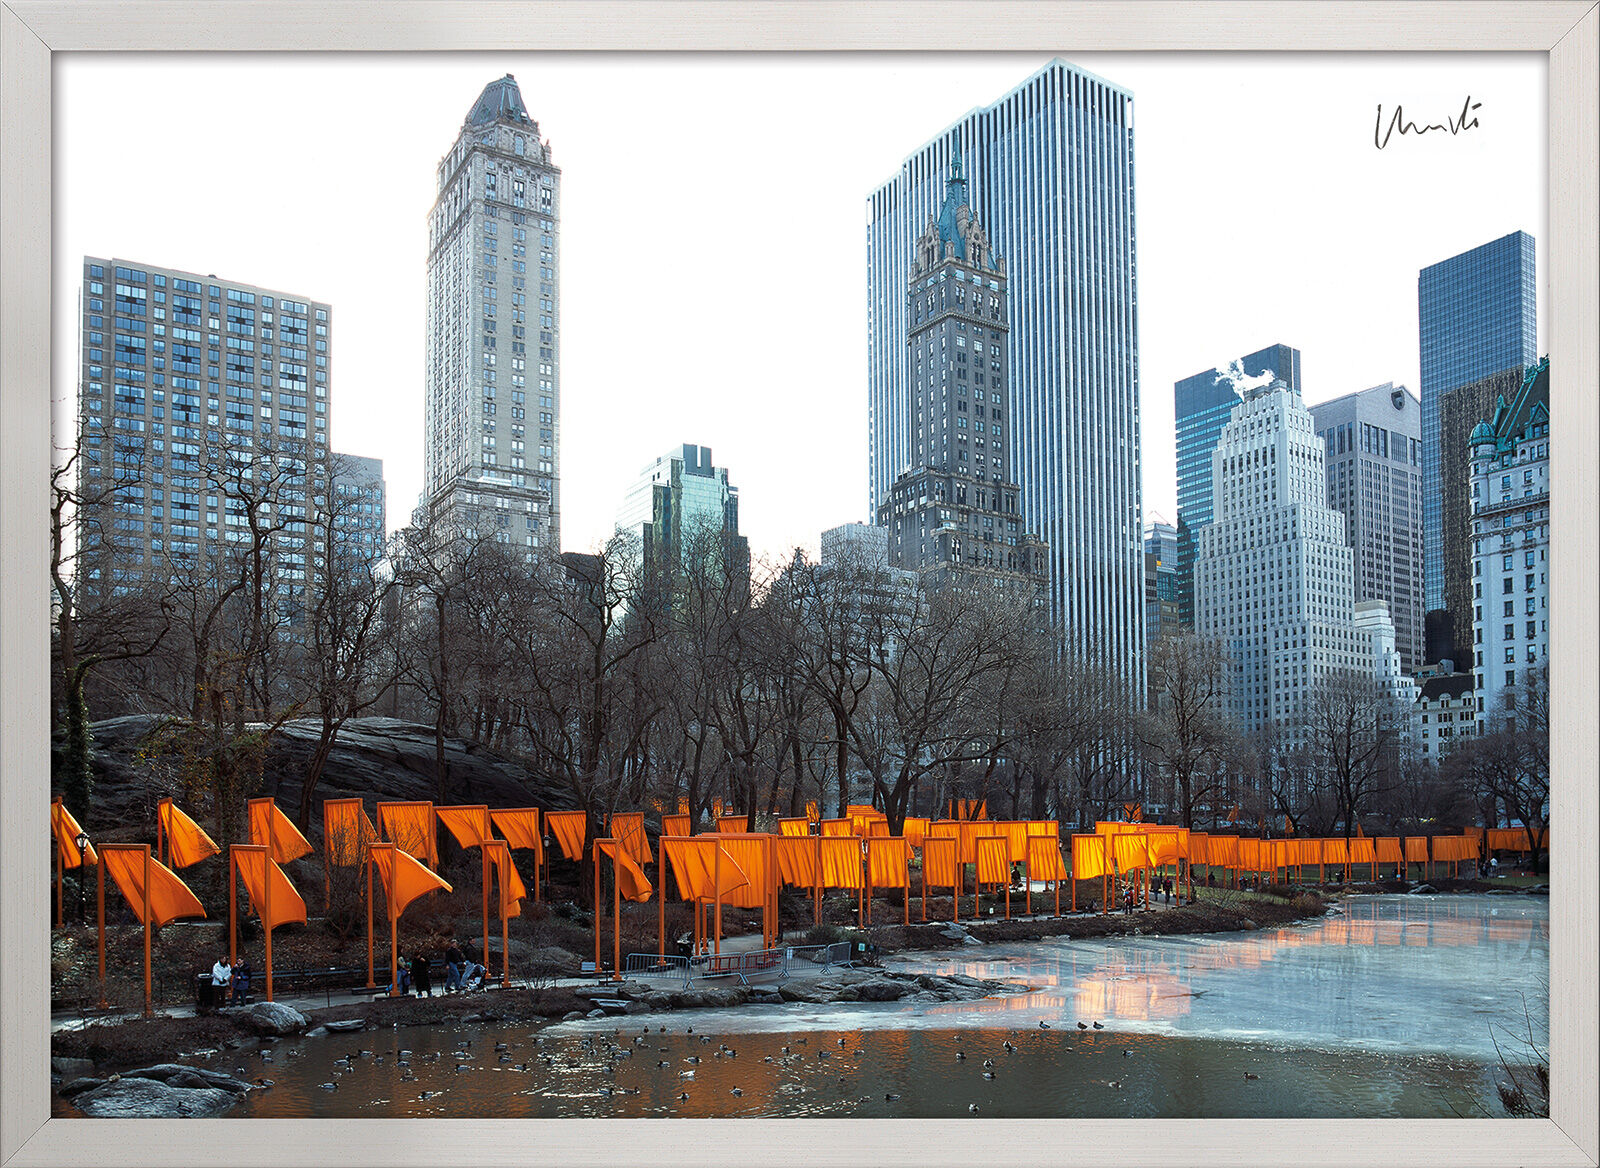 Tableau "The Gates Photo 50", encadré von Christo und Jeanne-Claude